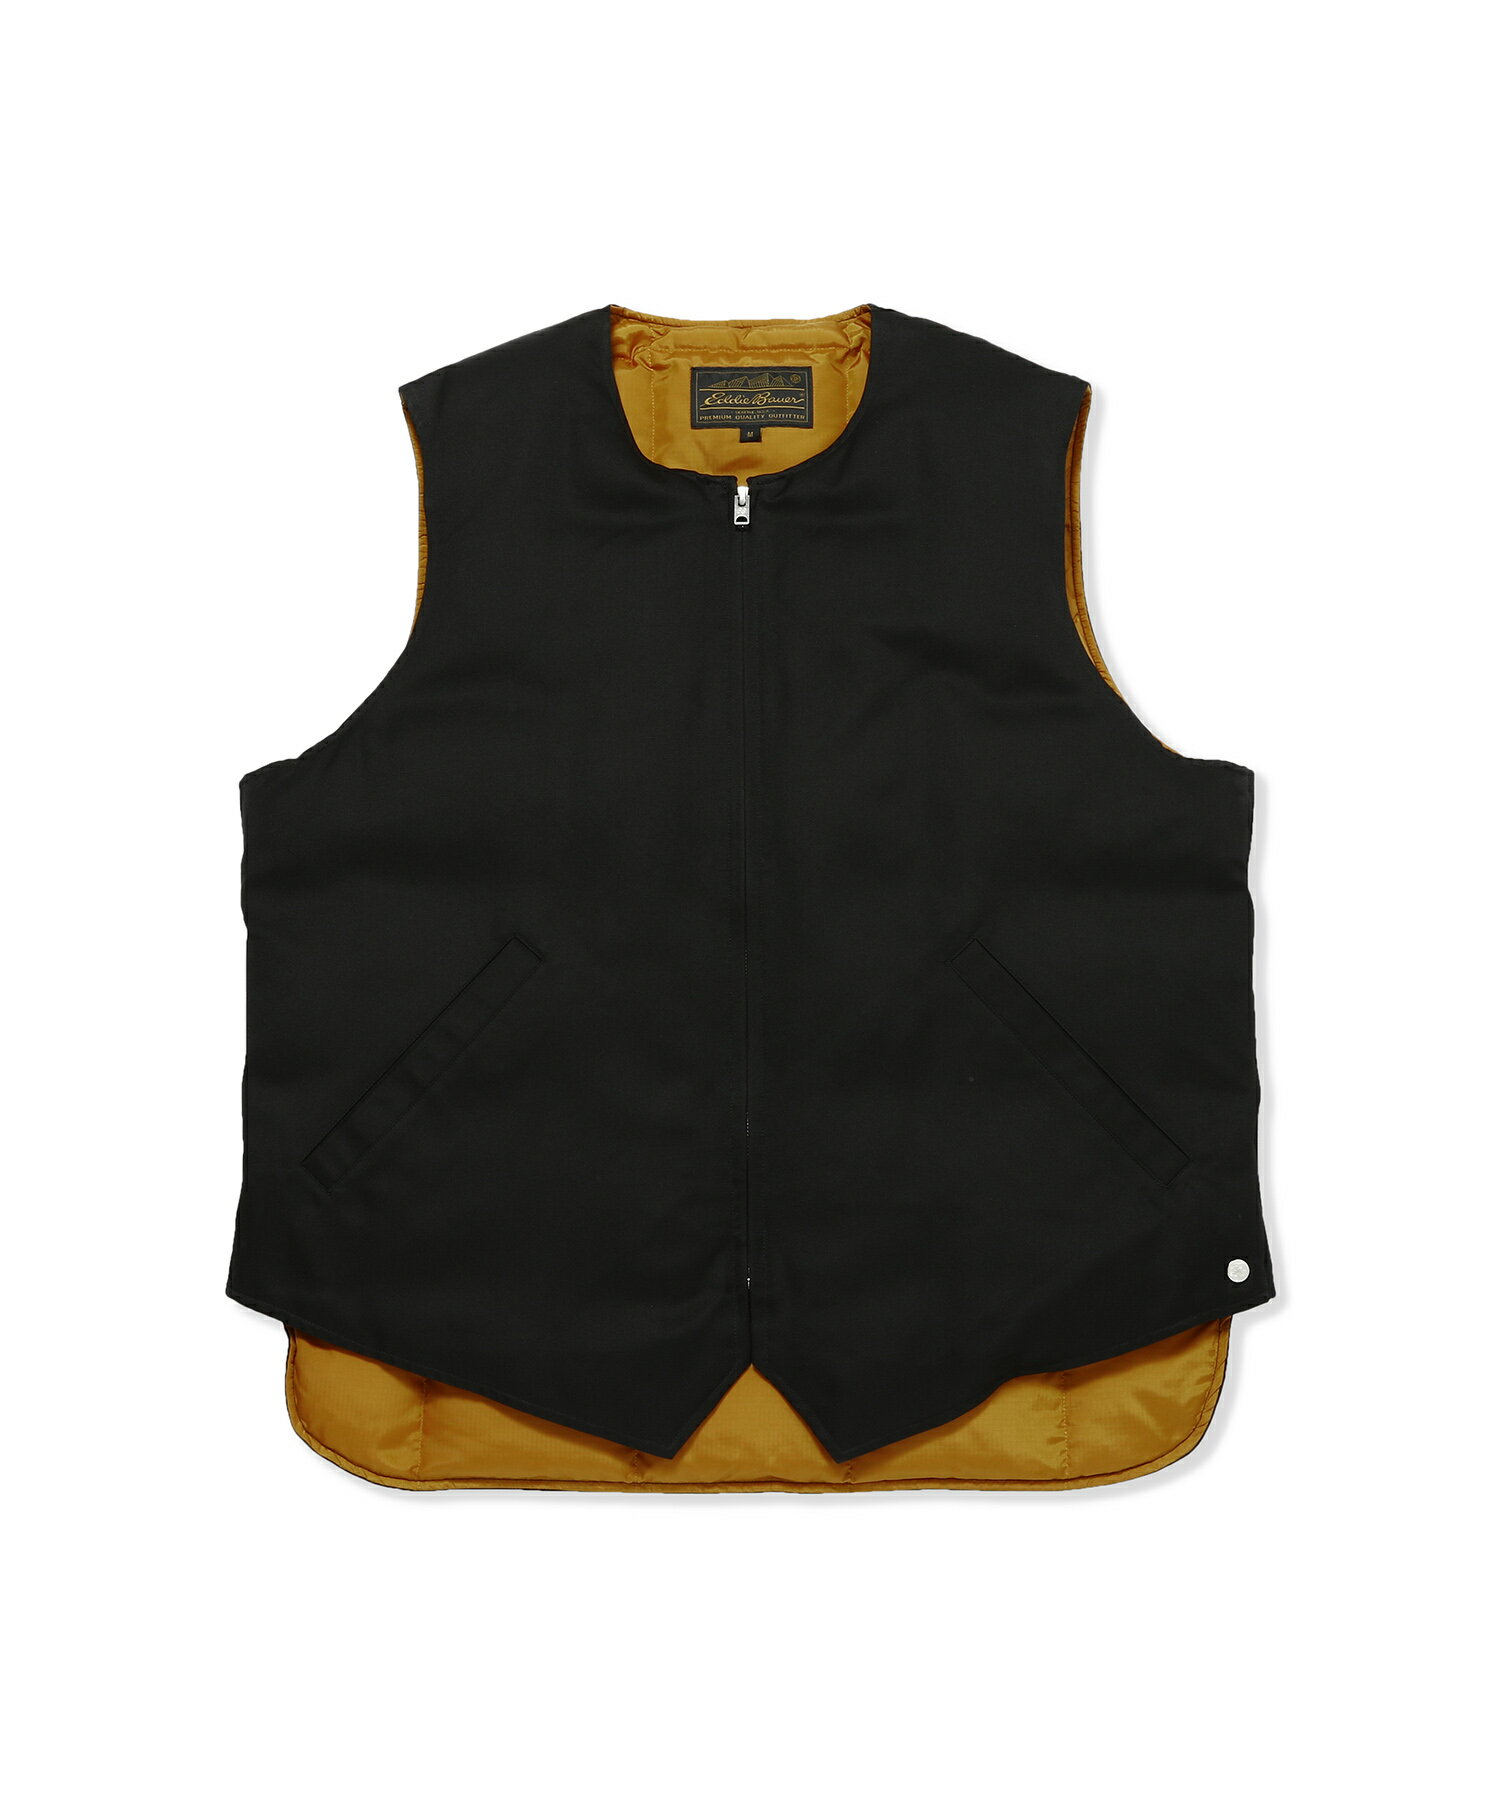 Eddie Bauer Black Tag Collection Blizzard Proof Vest(EB0102-M1006)【エディーバウアー ブラックタグコレクション ブリザードプルーフベスト】国内正規品 メンズ アウター ジャケット ストリート カジュアル シンプル コットン シルク ブラック M/L/XL